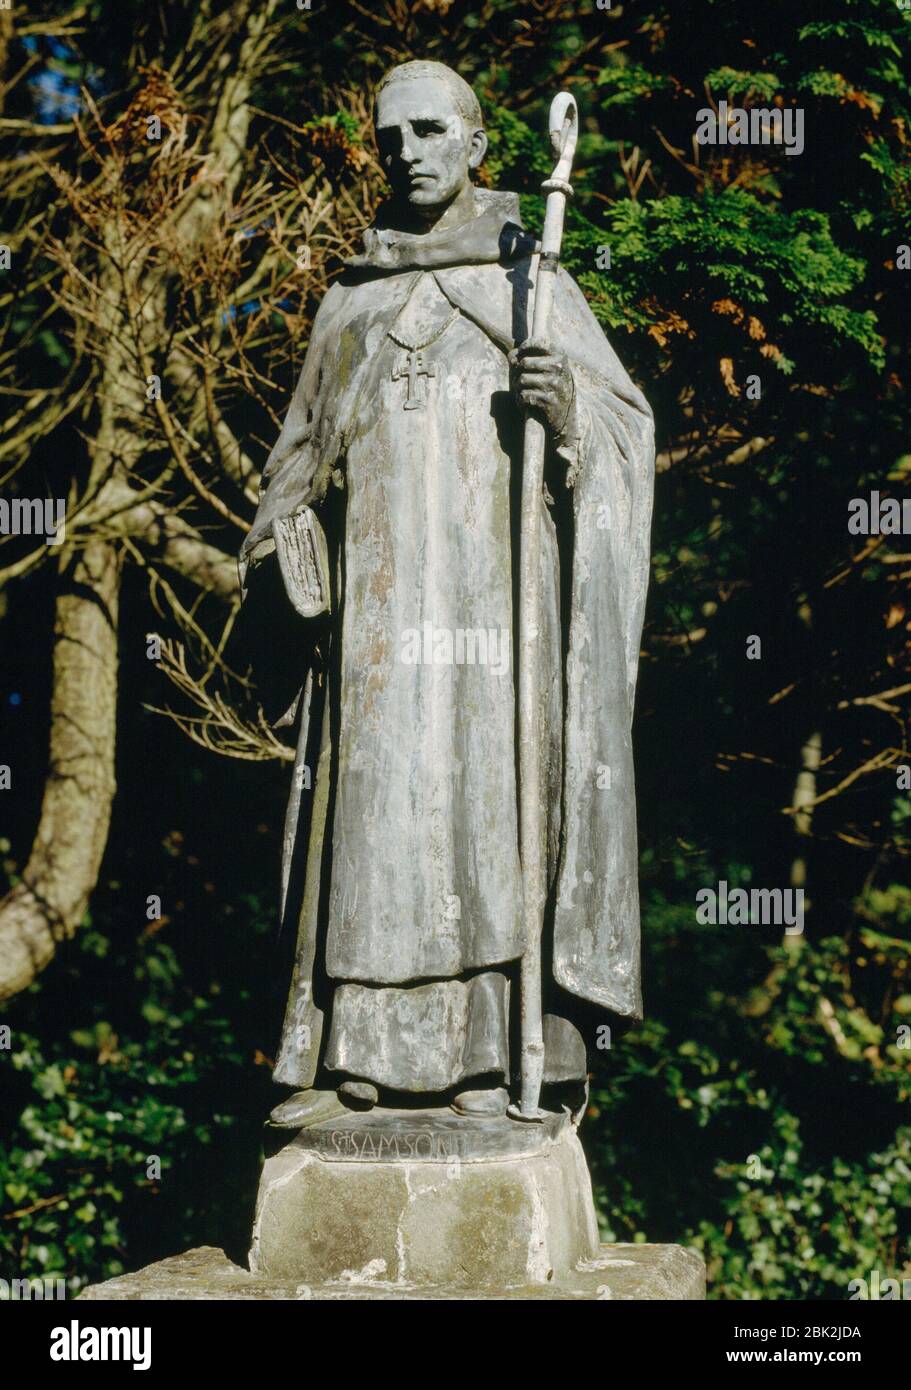 Eine 20. Statue von St. Samson, zweiter Abt des C6. Keltischen Klosters auf Caldey Island, Pembrokeshire, Wales, Großbritannien; Schirmherr der ganzen Insel. Stockfoto